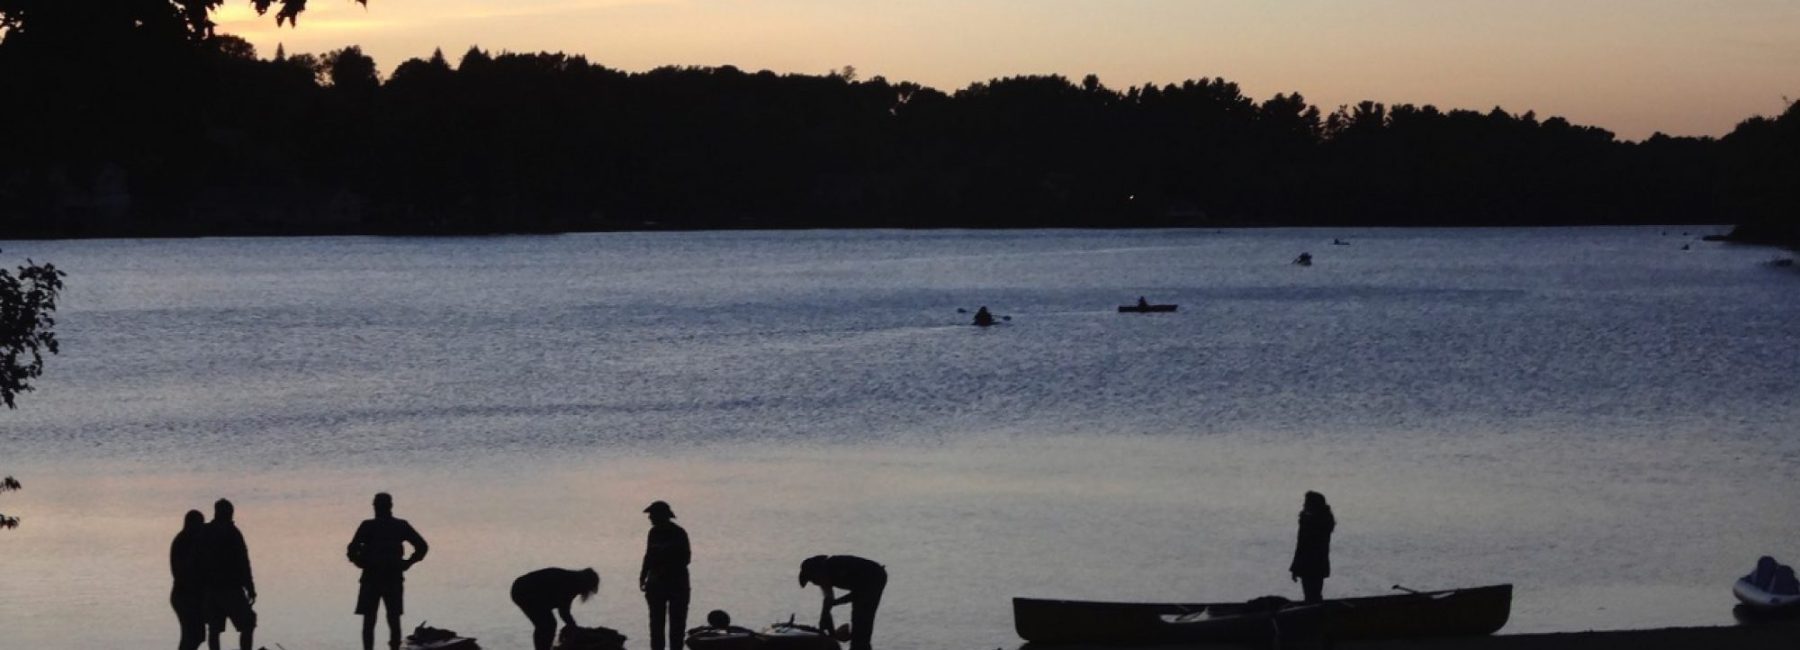 Lake Gardner Moonlight Paddle – TIMING MOVED